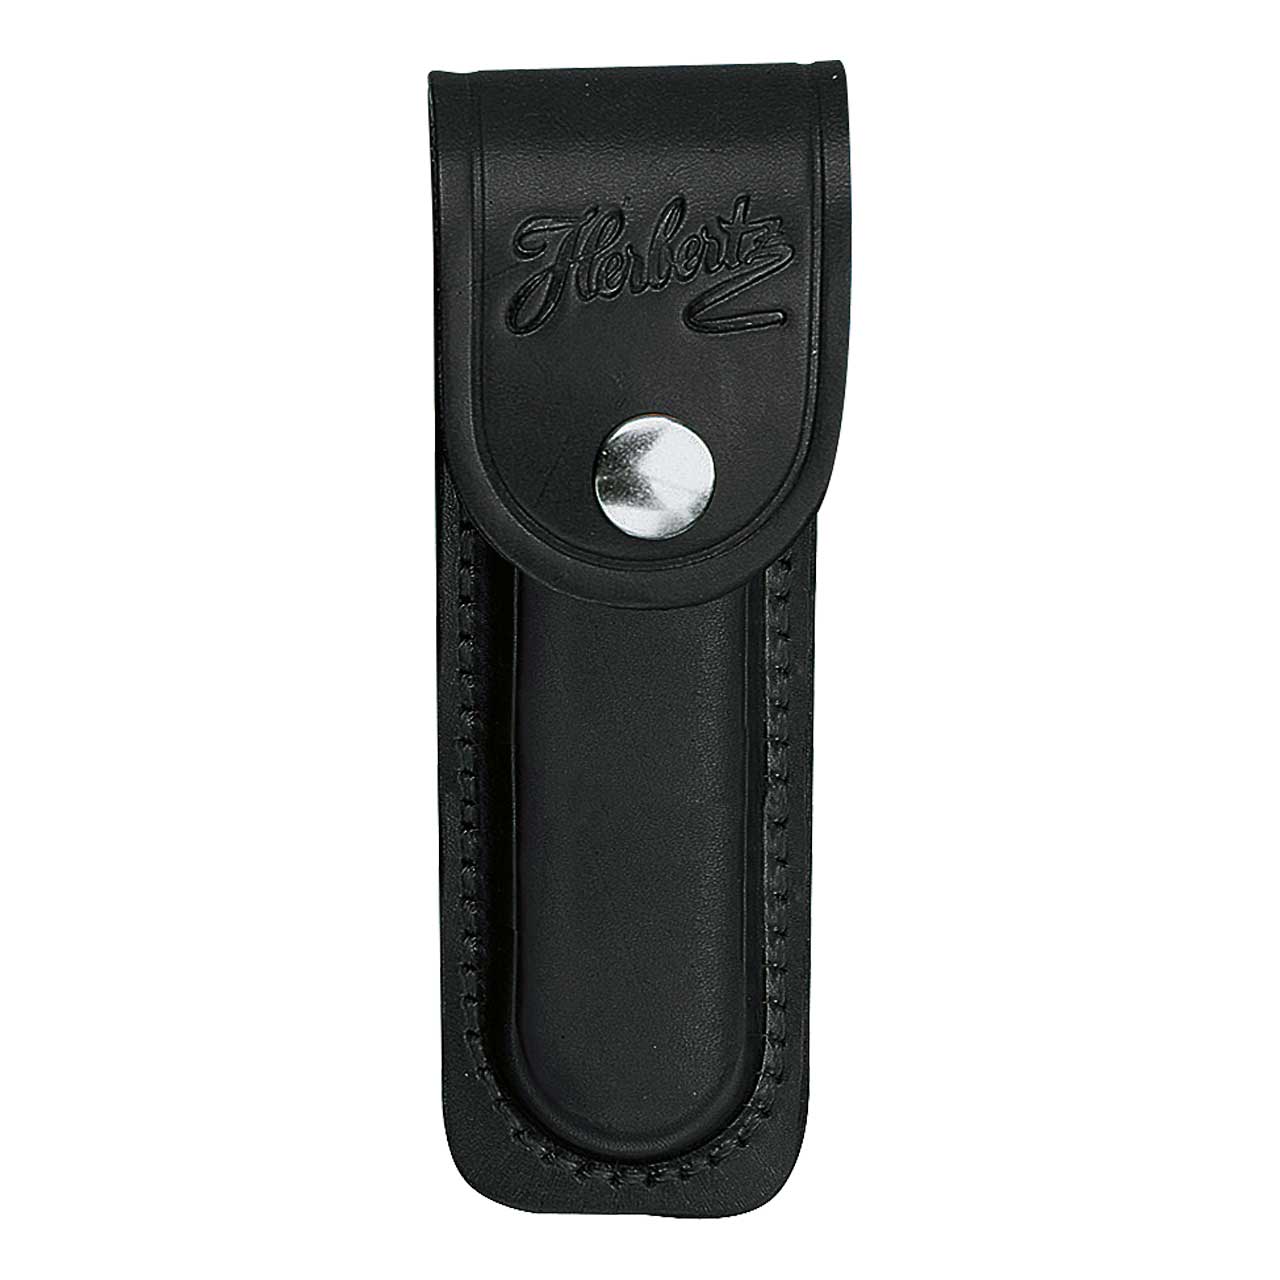 Picture of Herbertz - Leather Case Black for Stapler Length 13 cm